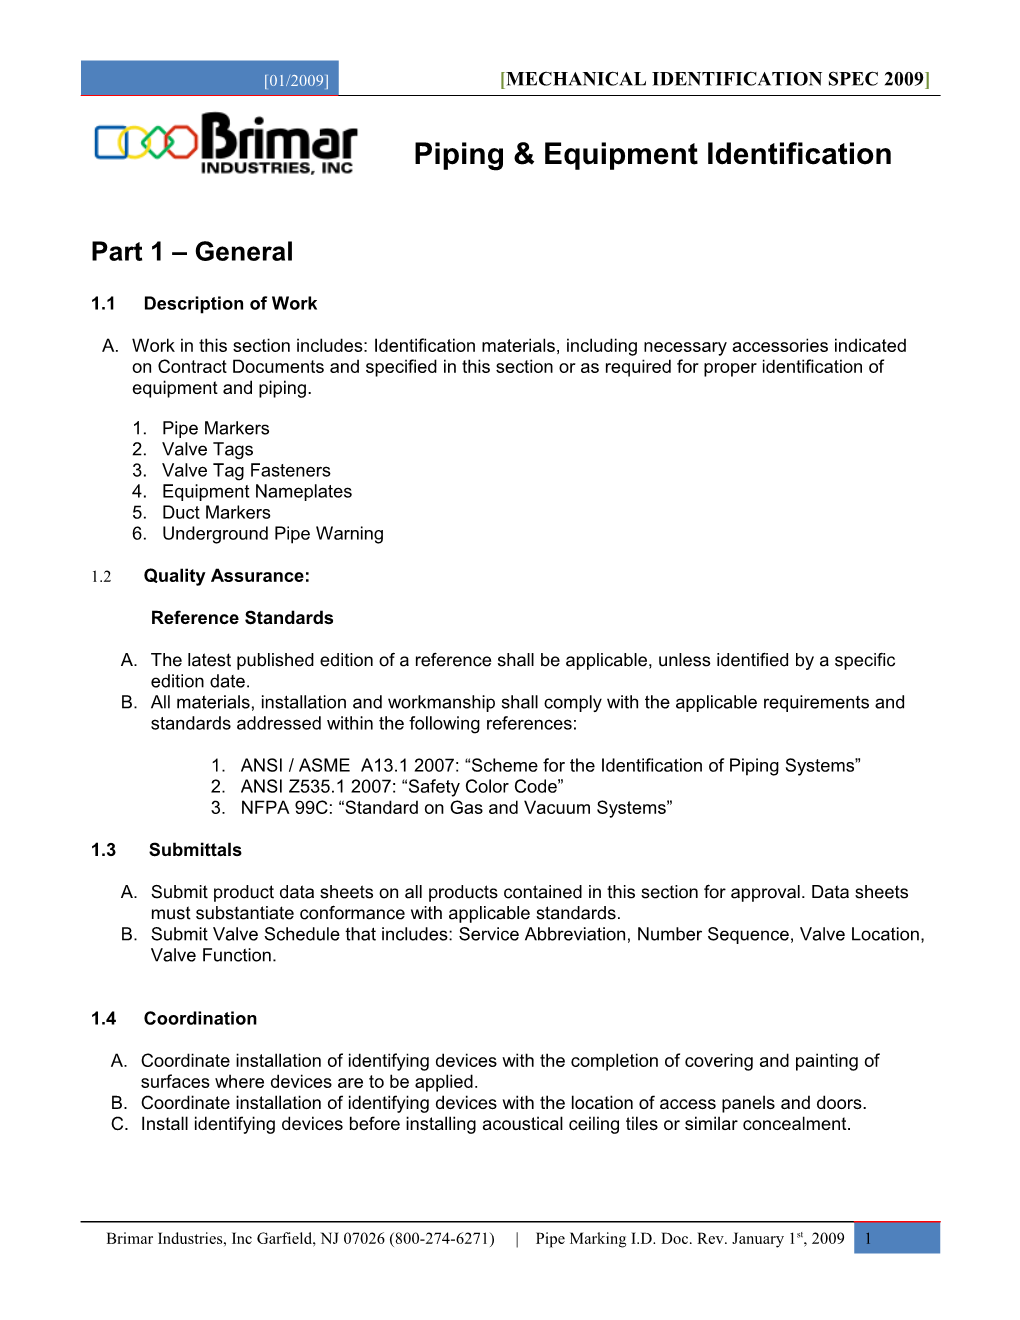 Brimar Industries Pipe Identification Spec (2009)